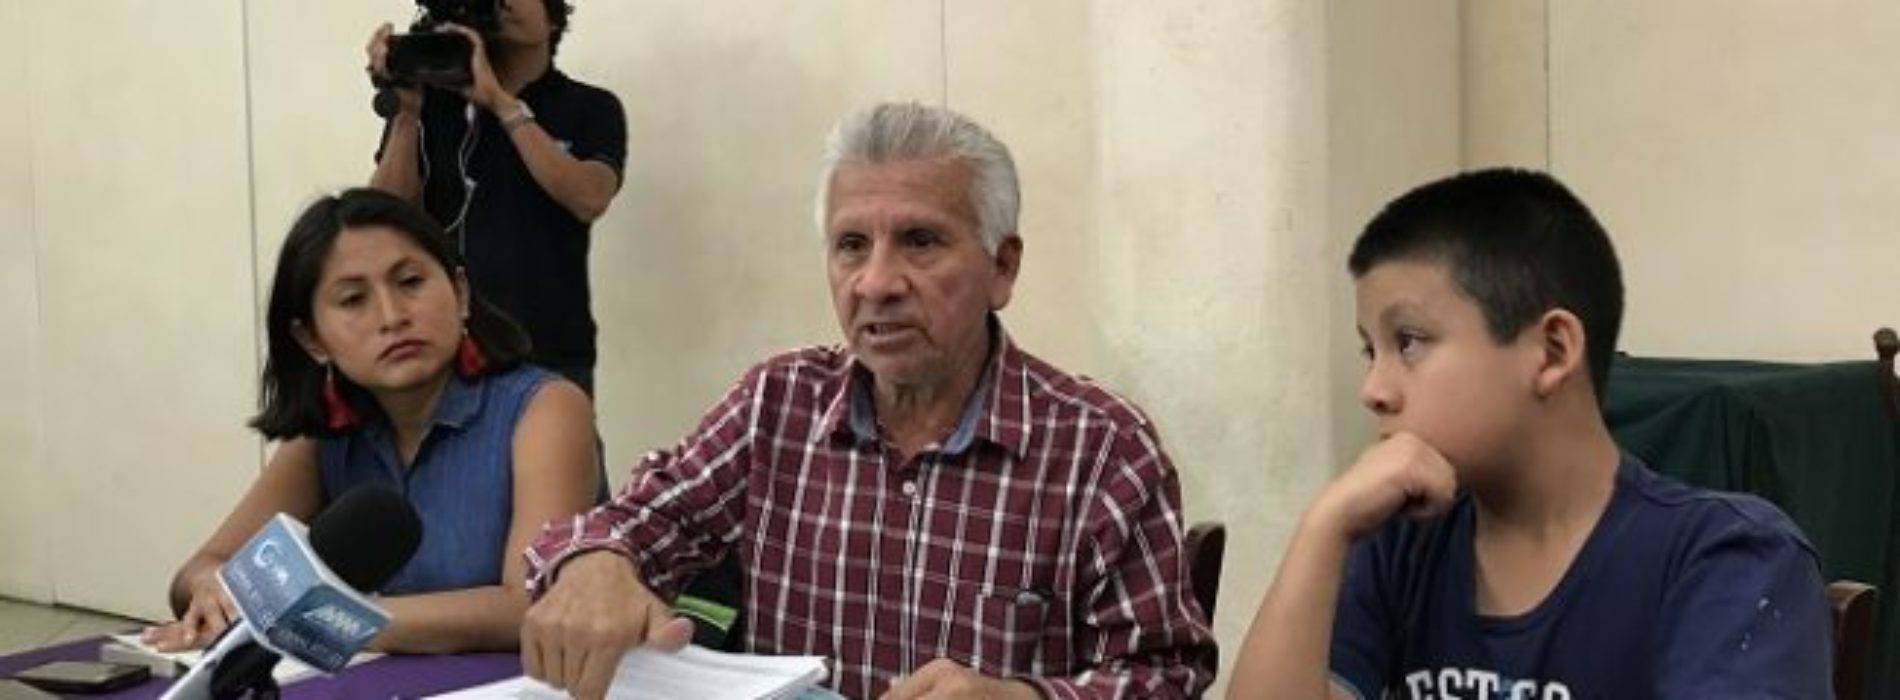 Exigen salida de director de primaria Benito Juárez por
estar señalado de abusos